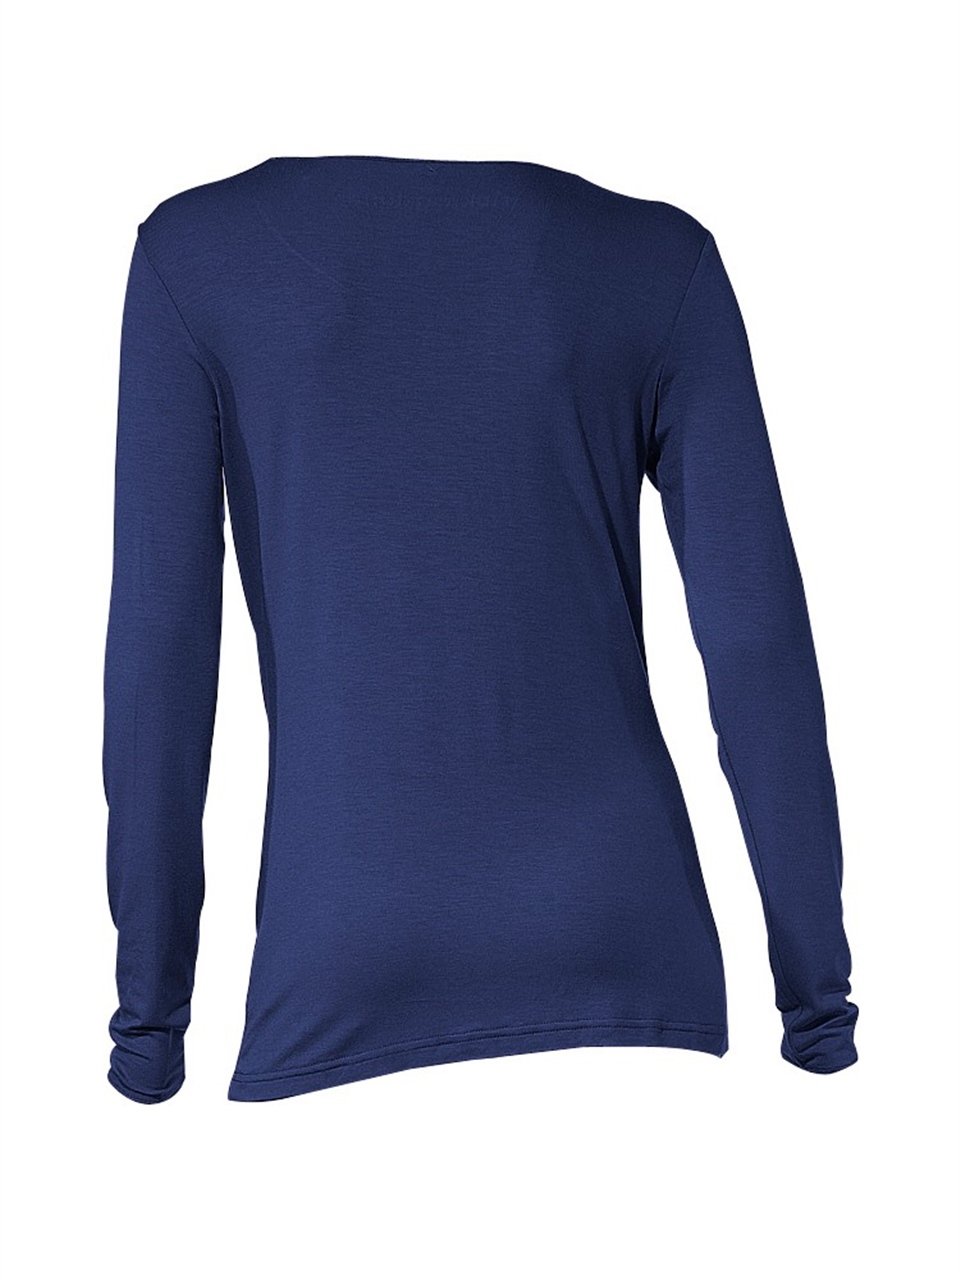 Bulalgiy'in Basic Uzun Kollu Tişört - Gece Mavisi modelini incelemek ve  sipariş vermek için tıkla!